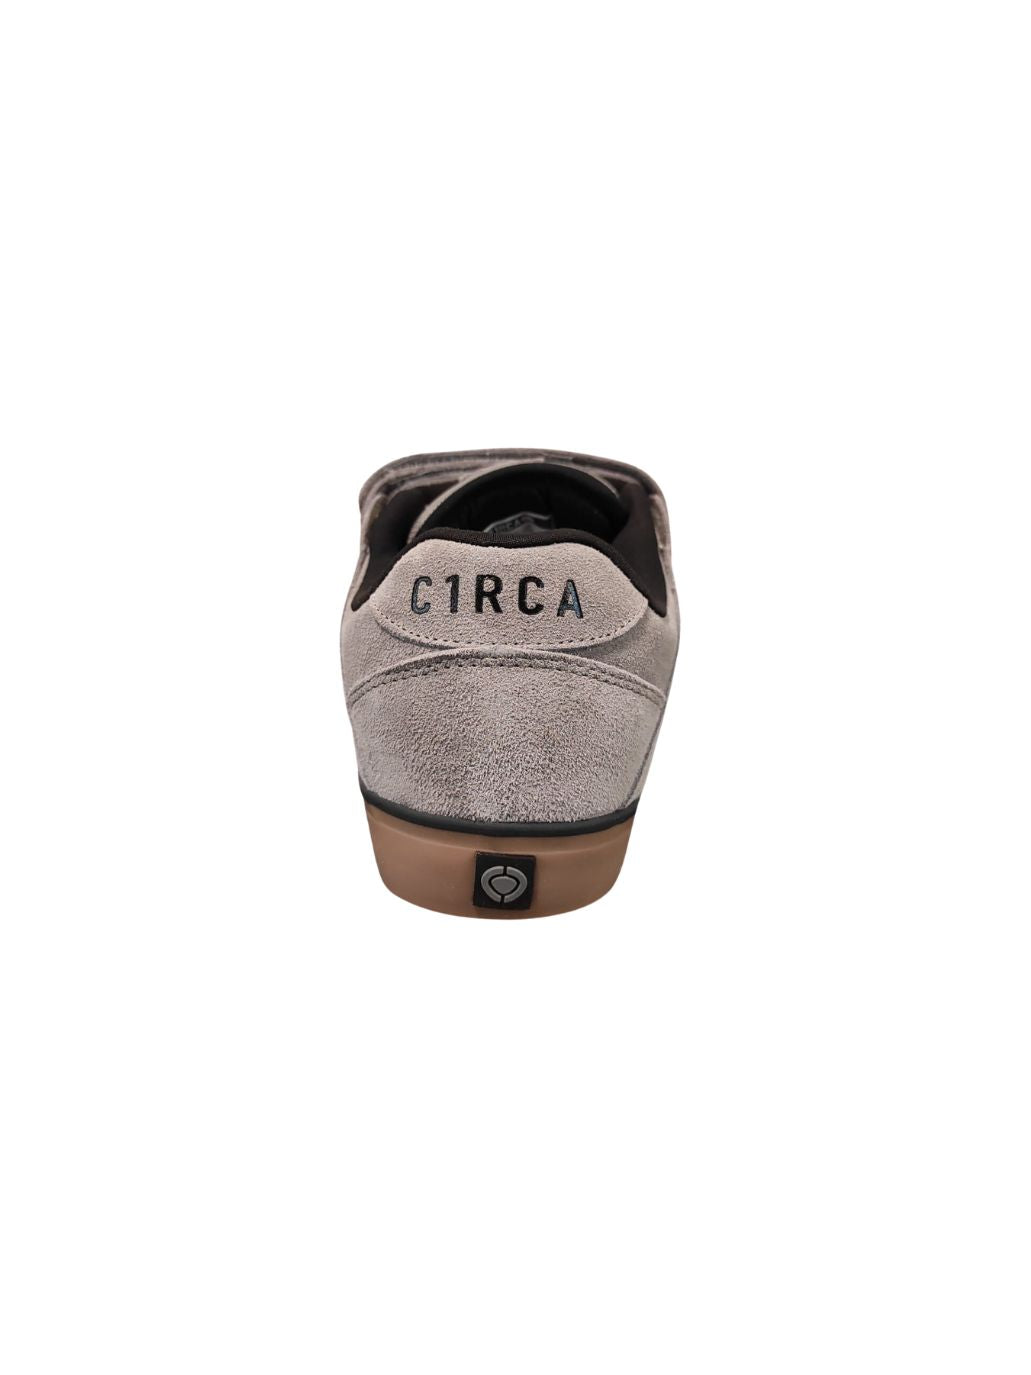 Zapatillas de skate Circa 205 Vulc Steeple Grey/Black/Gum/Suede